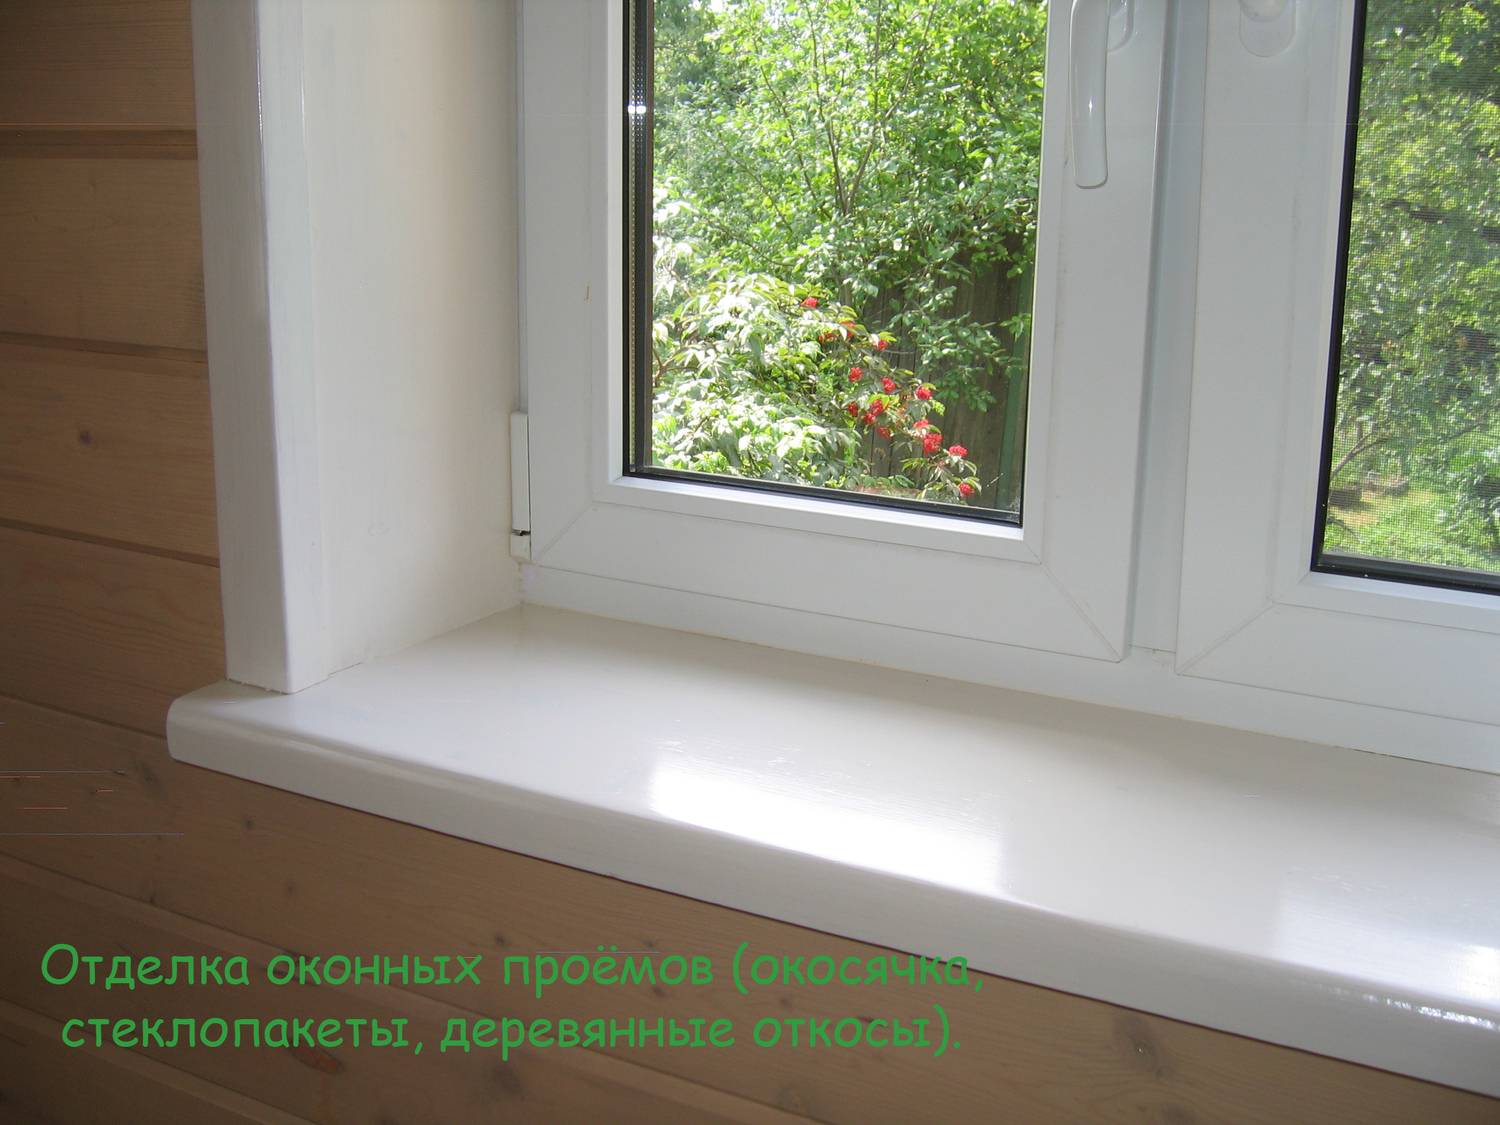 Пластиковые откосы и подоконники на окнах. как самому сделать: инструкция пошагово